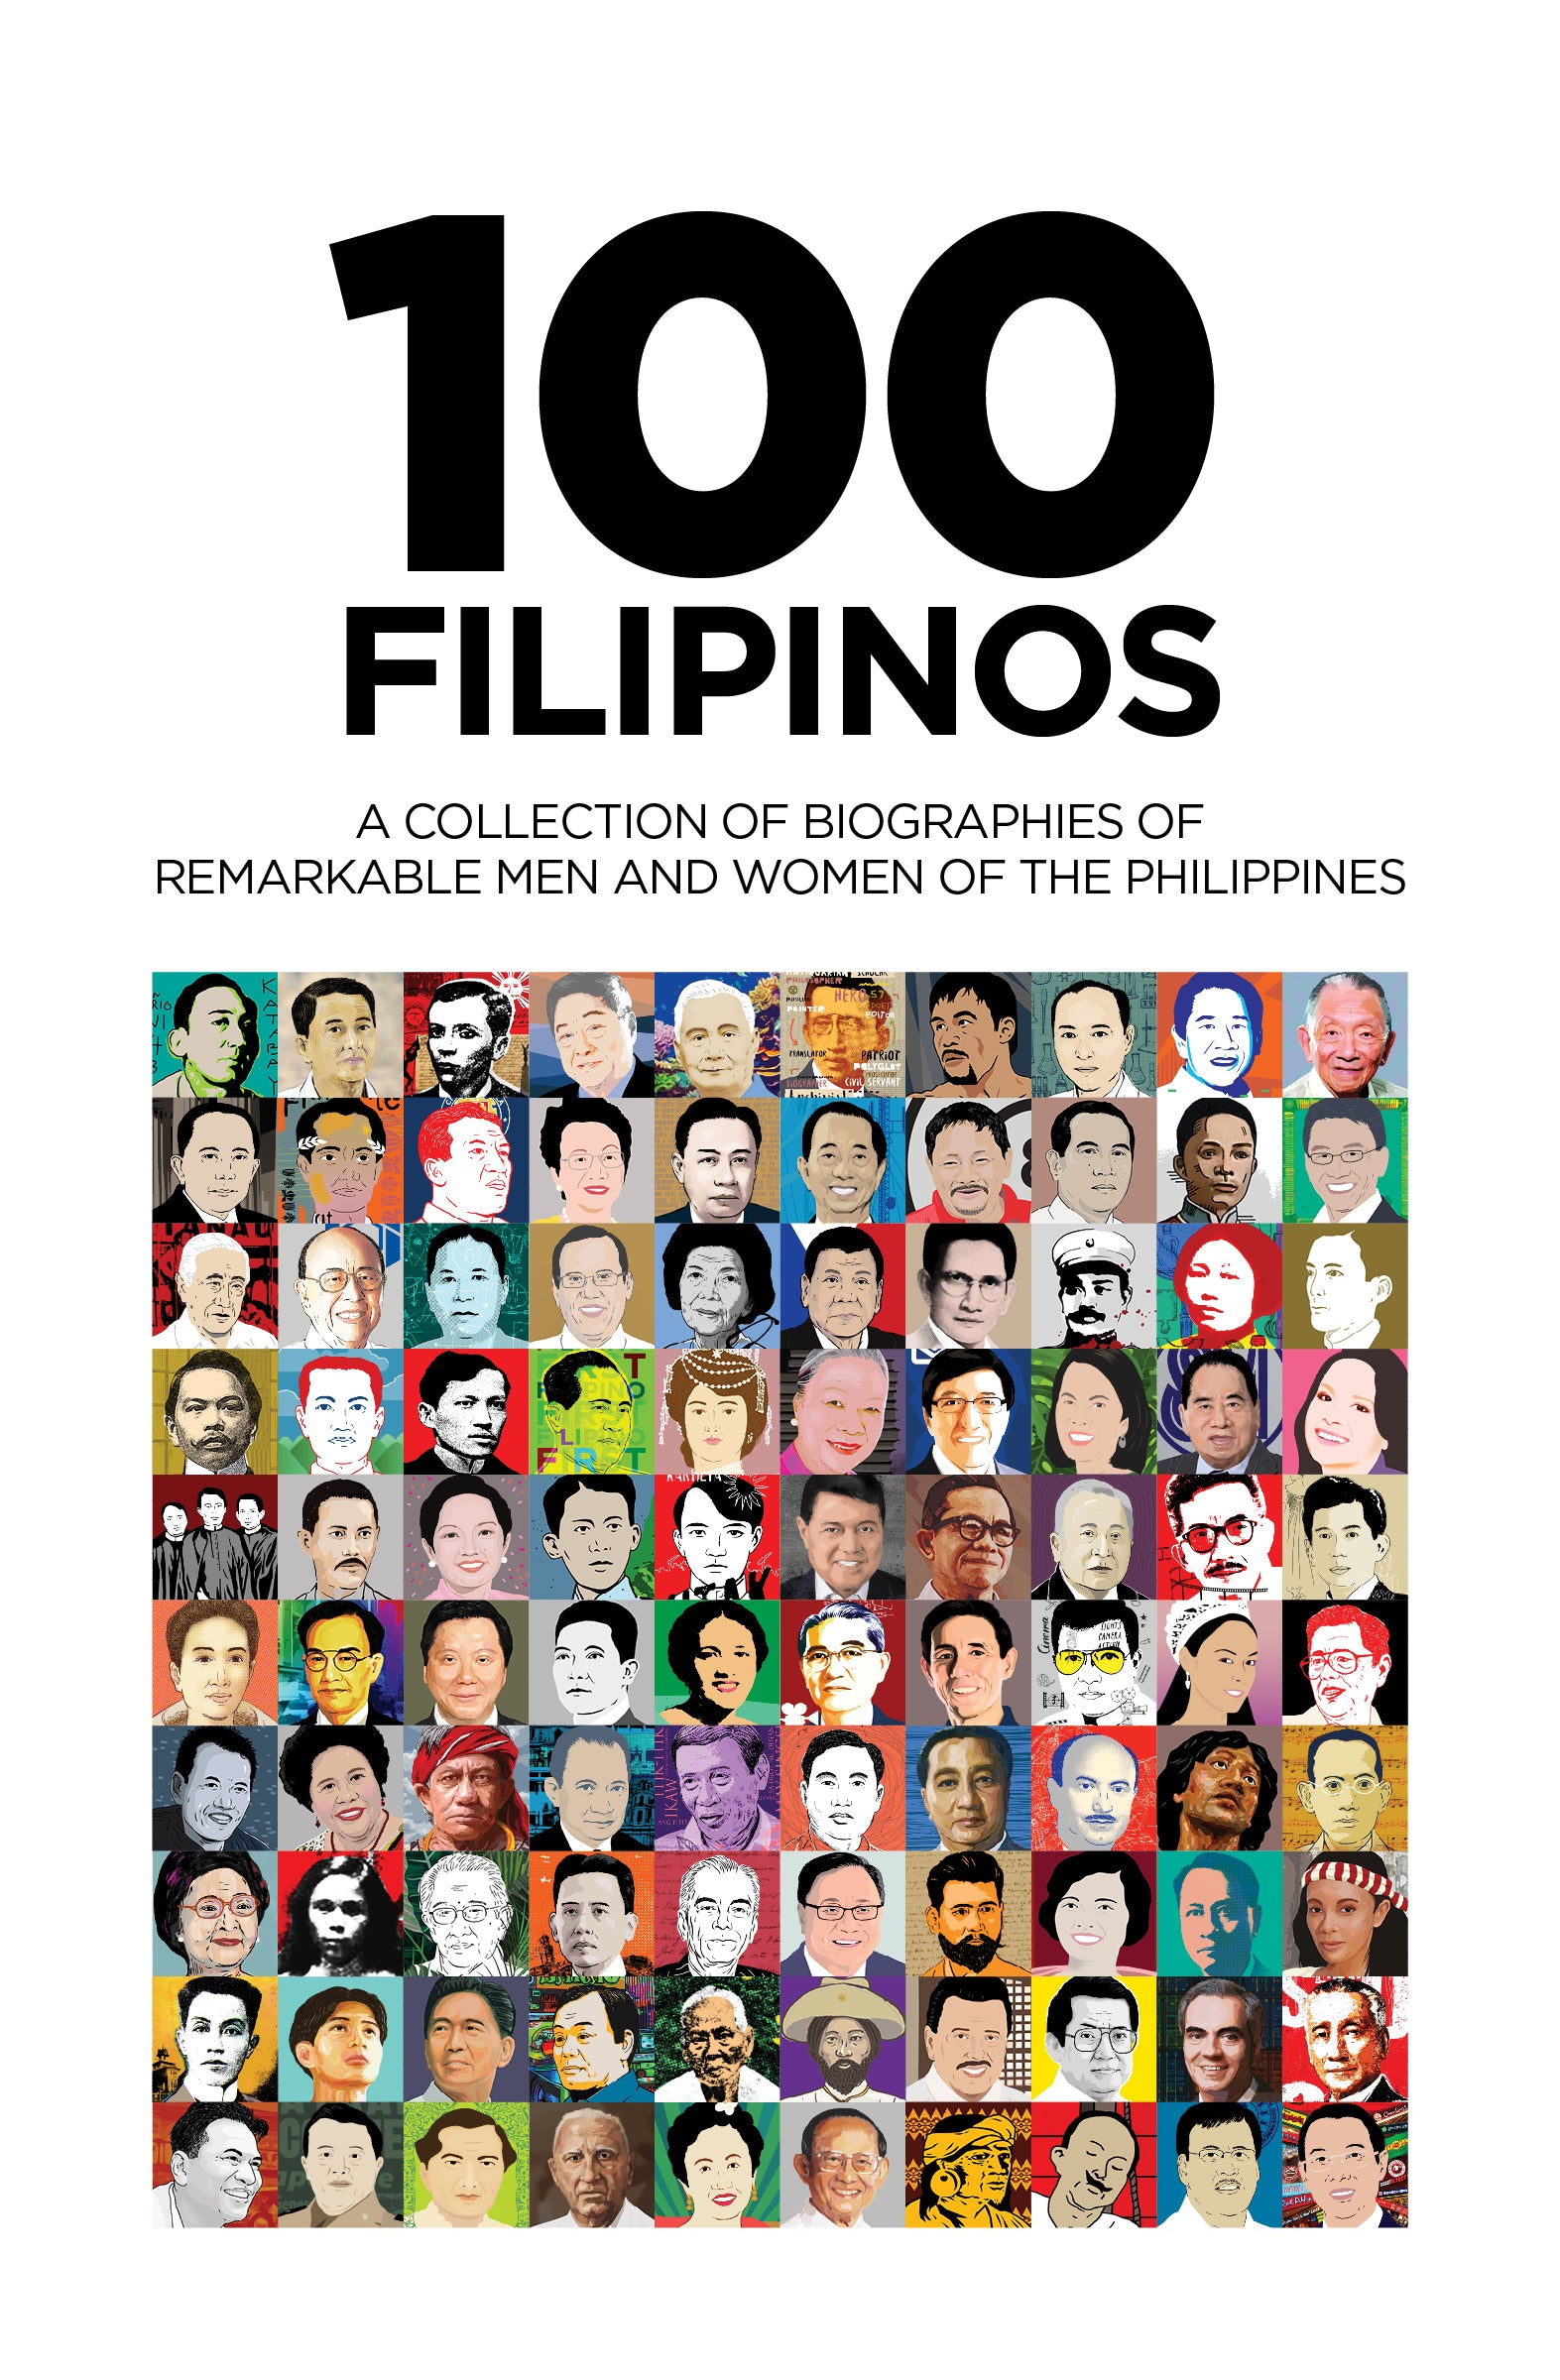 Hong Kong book shop 100 Filipinos (Publication date: August 20, 2020)